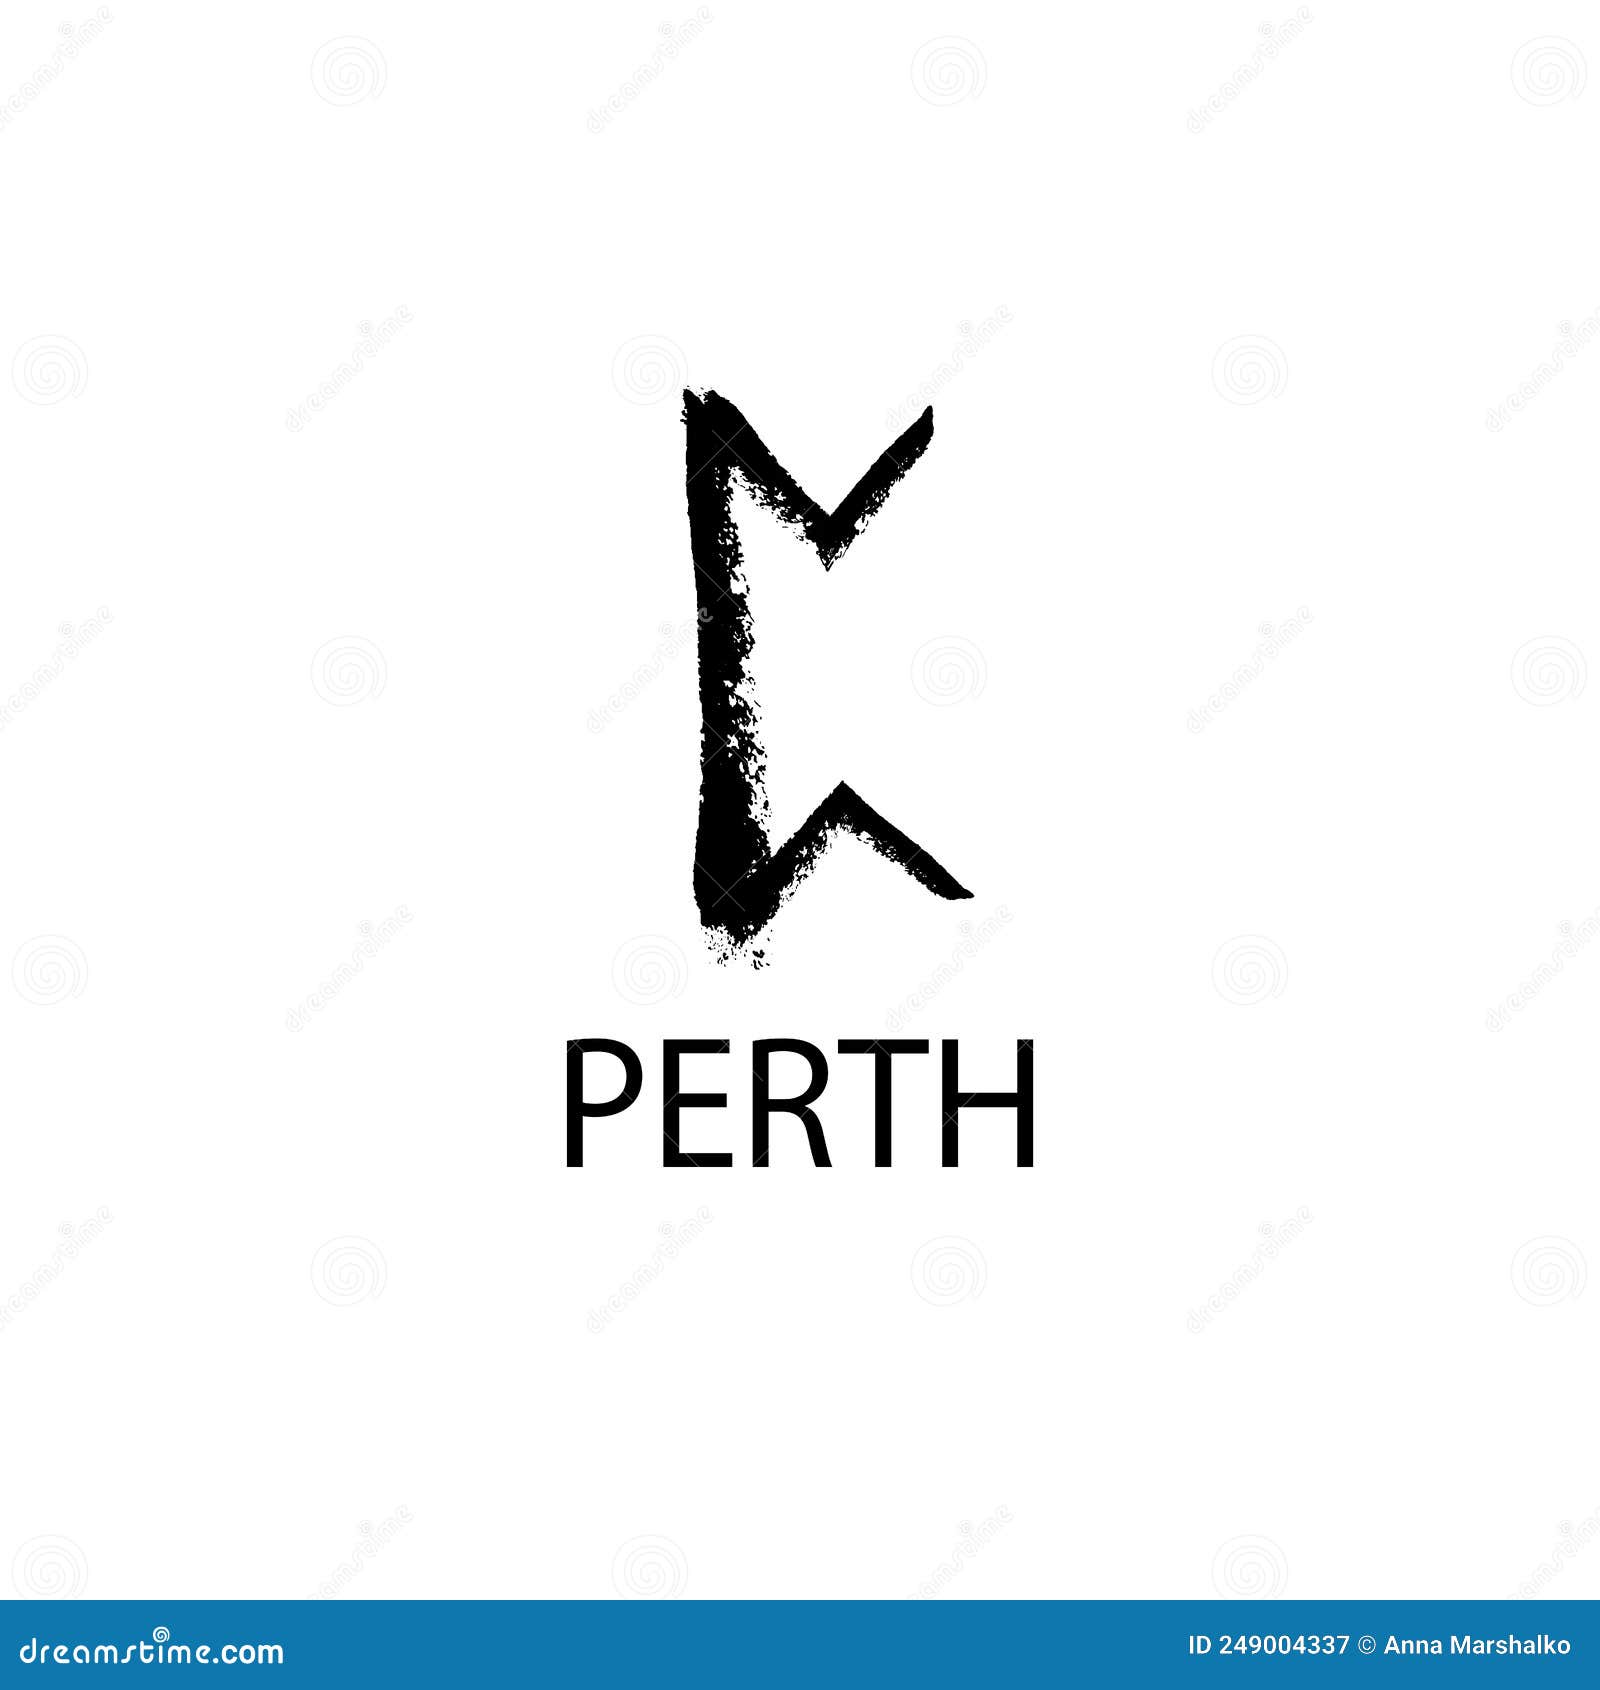 Perth No Jogo De Runas - Significado da Runa Perdhro